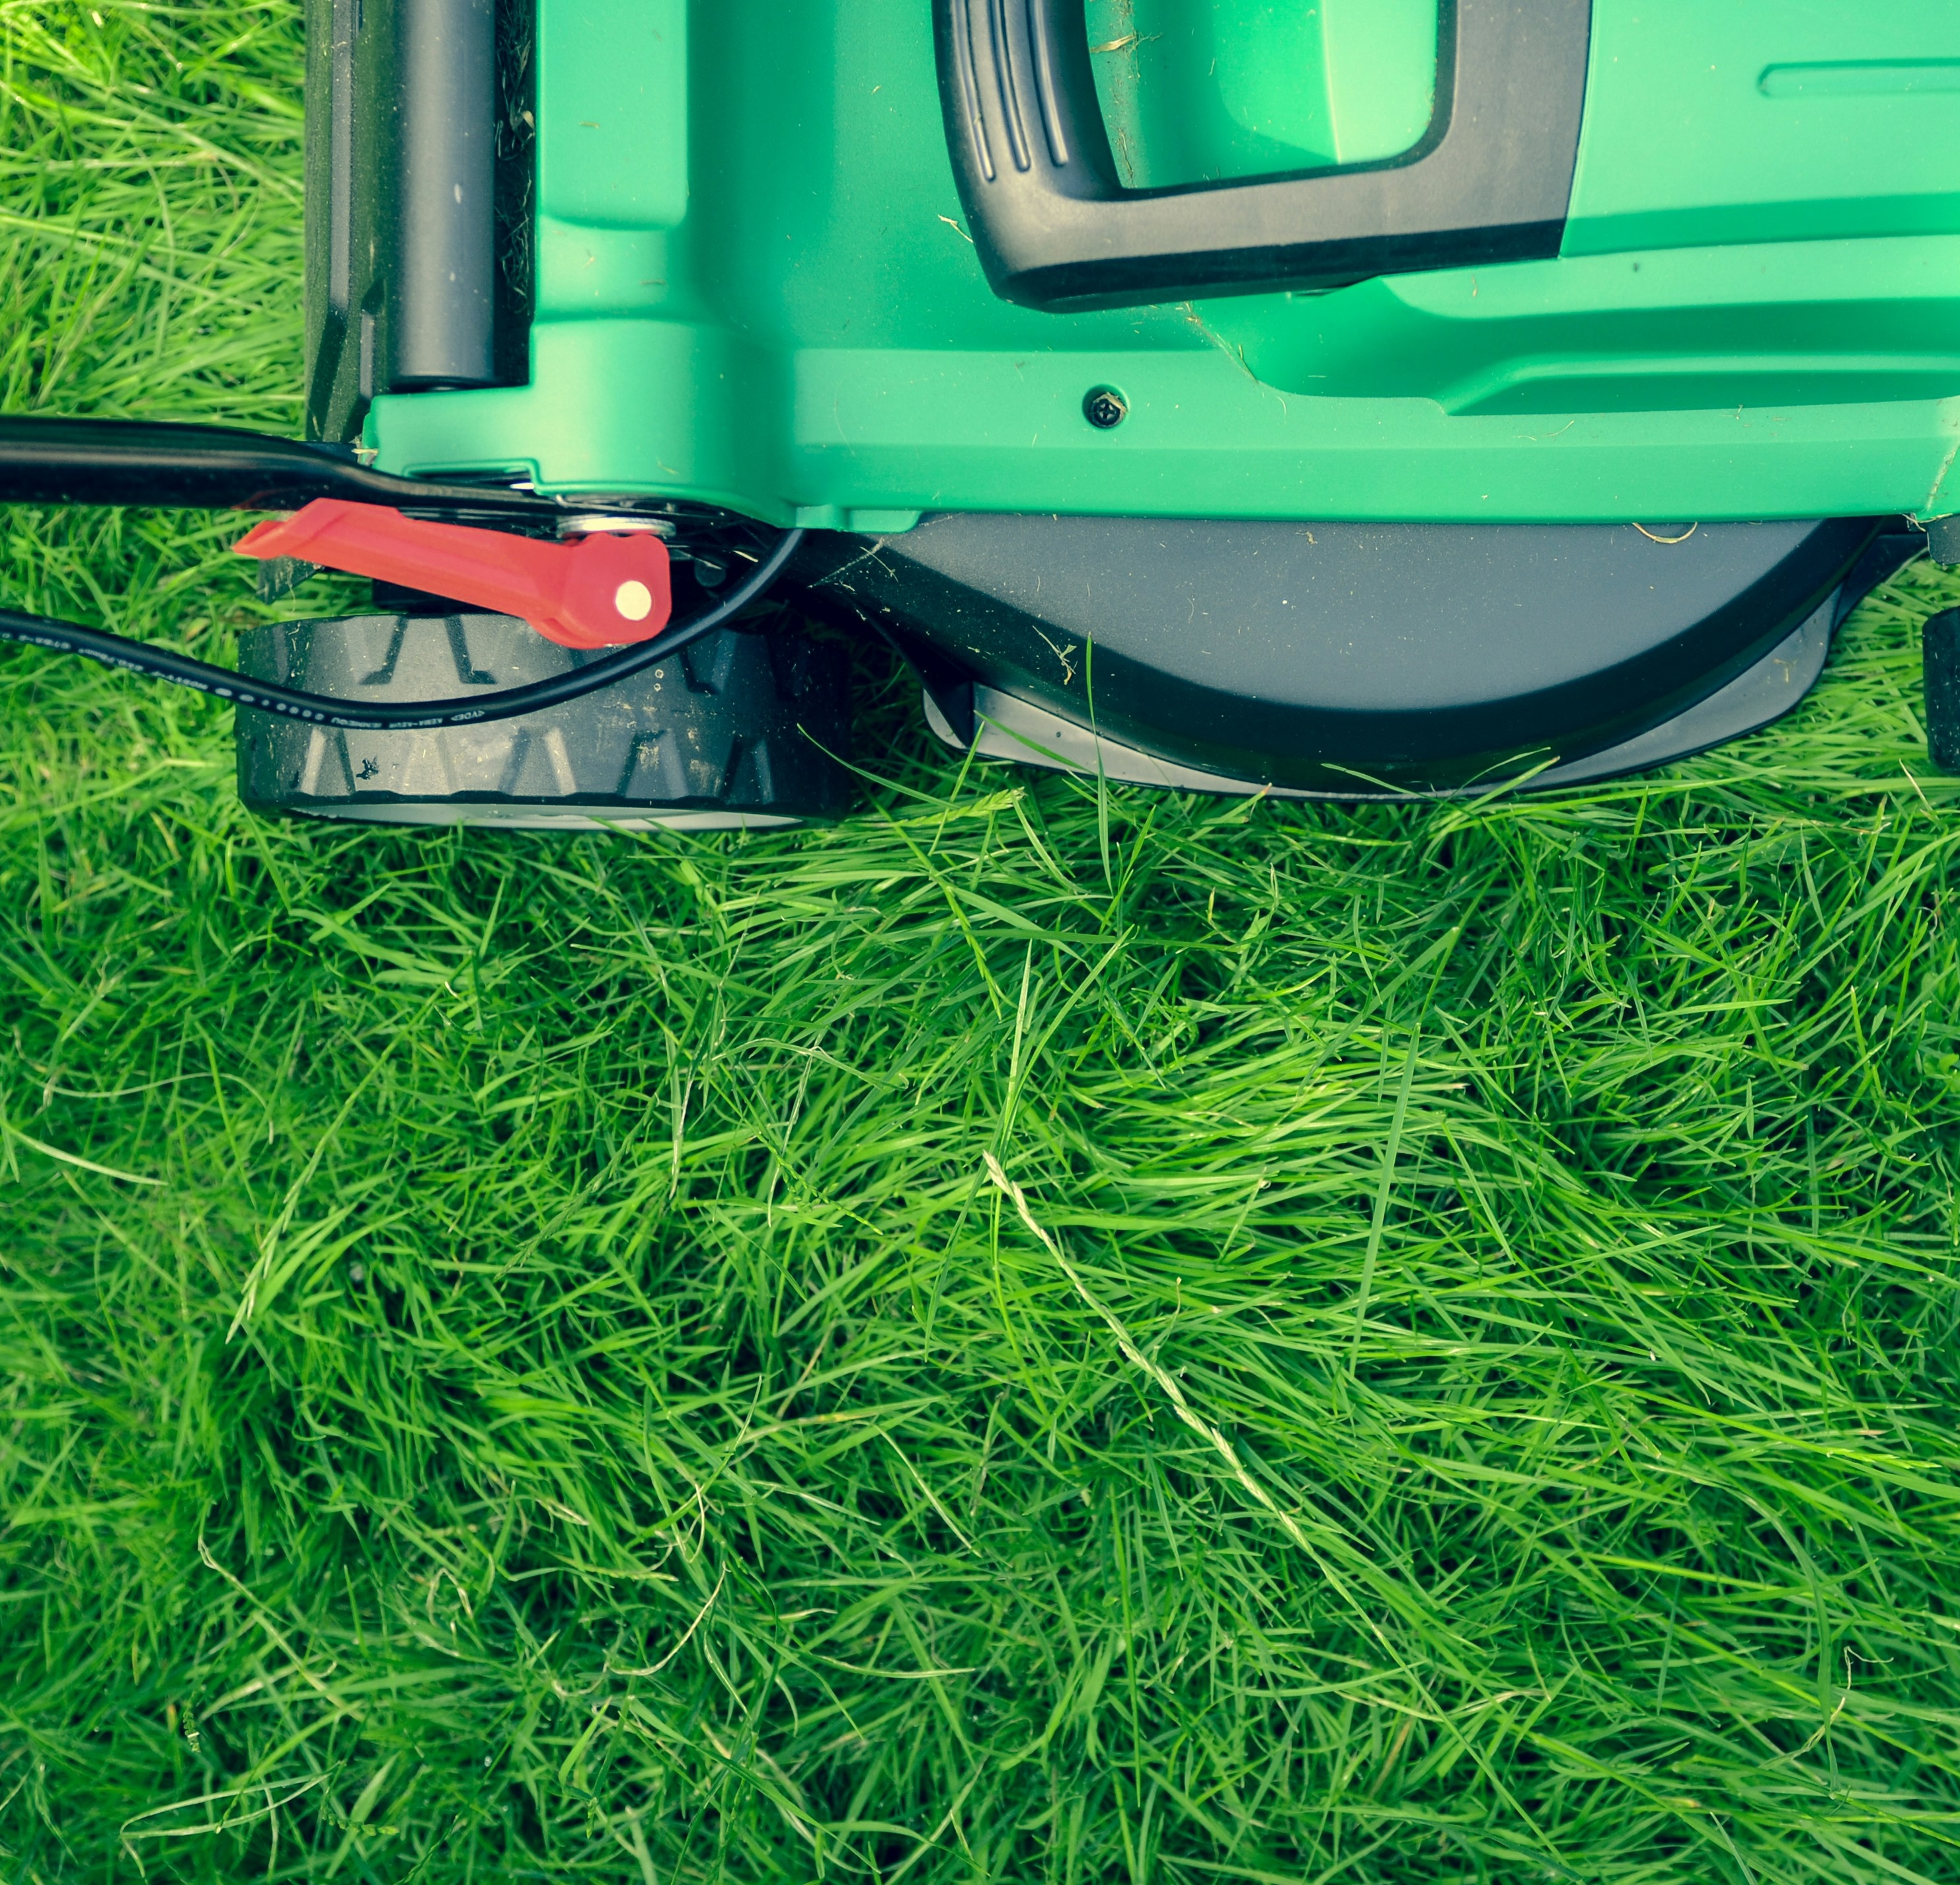 Photo of a lawnmower in grass, by Daniel Watson on Unsplash.com